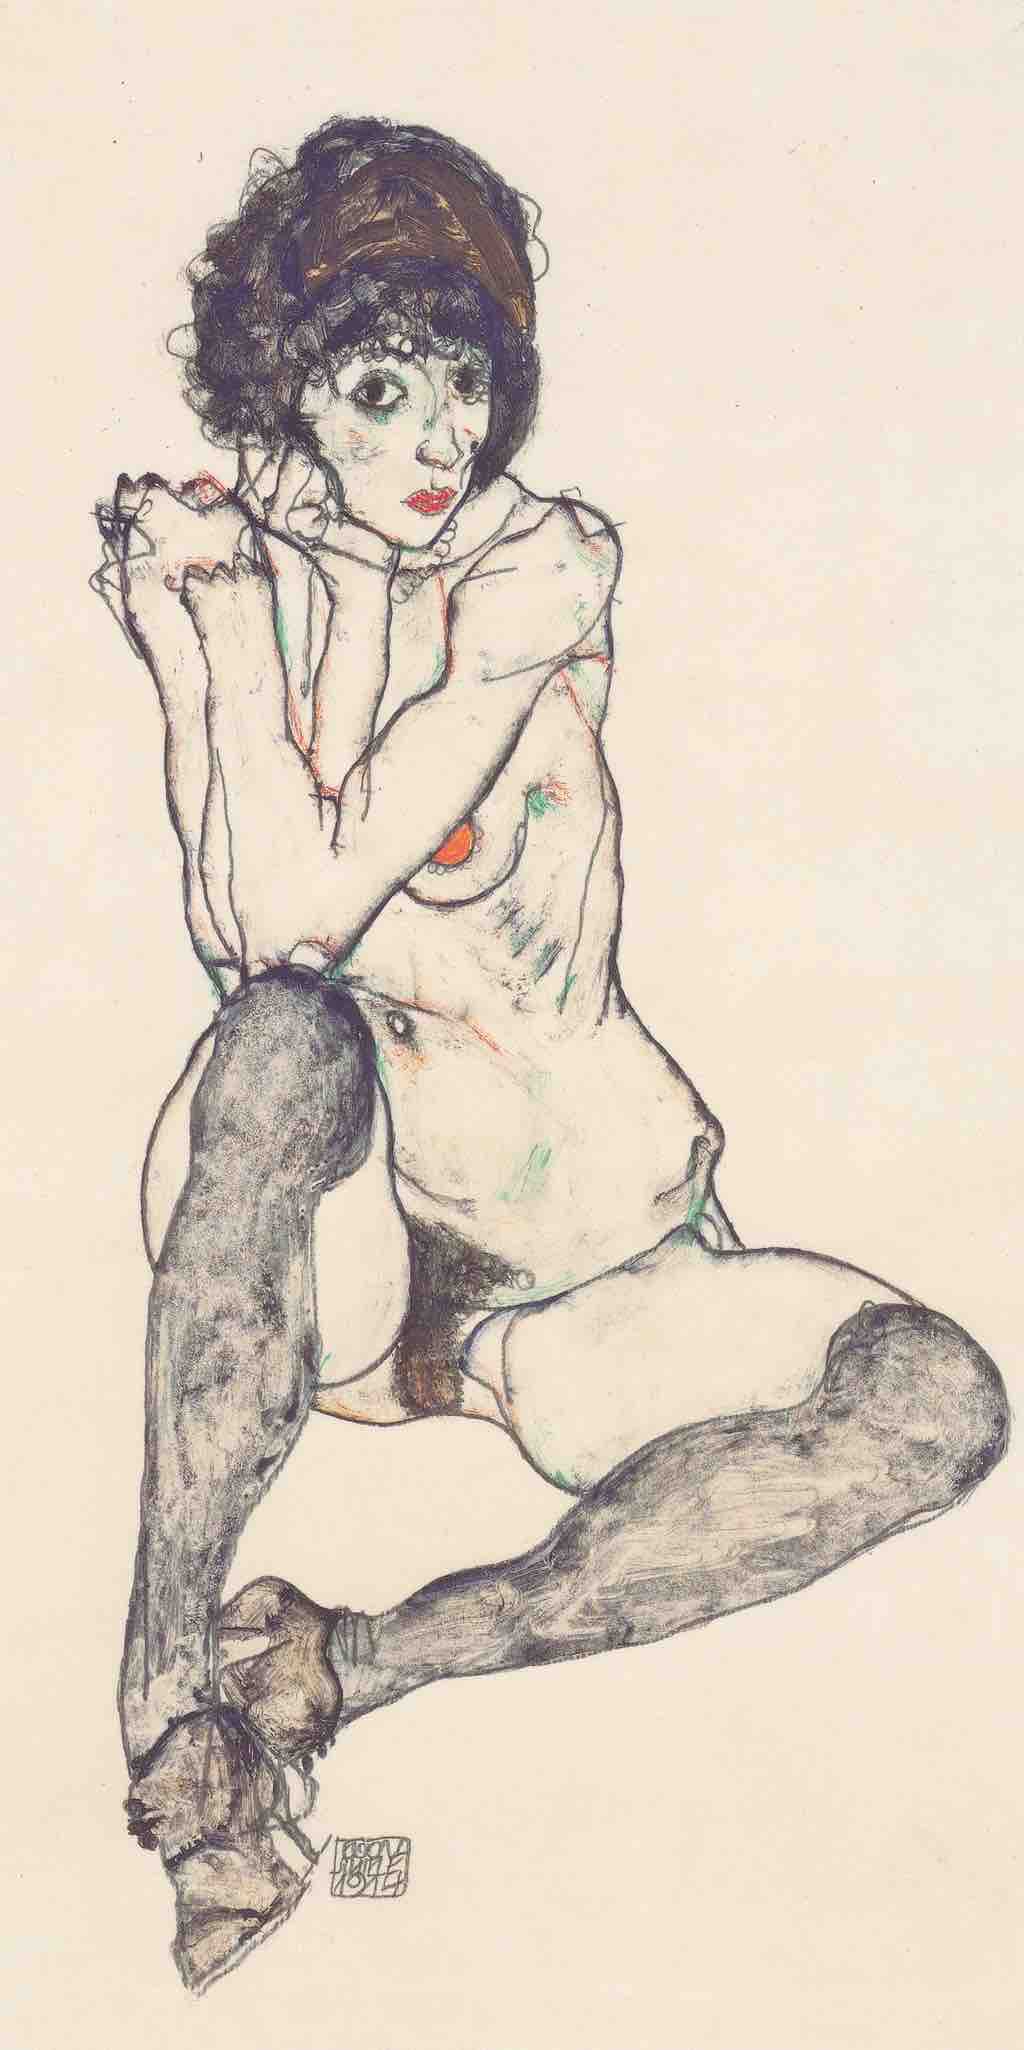 Sitzender weiblicher Akt mit aufgestützen Ellbogen, by Egon Schiele